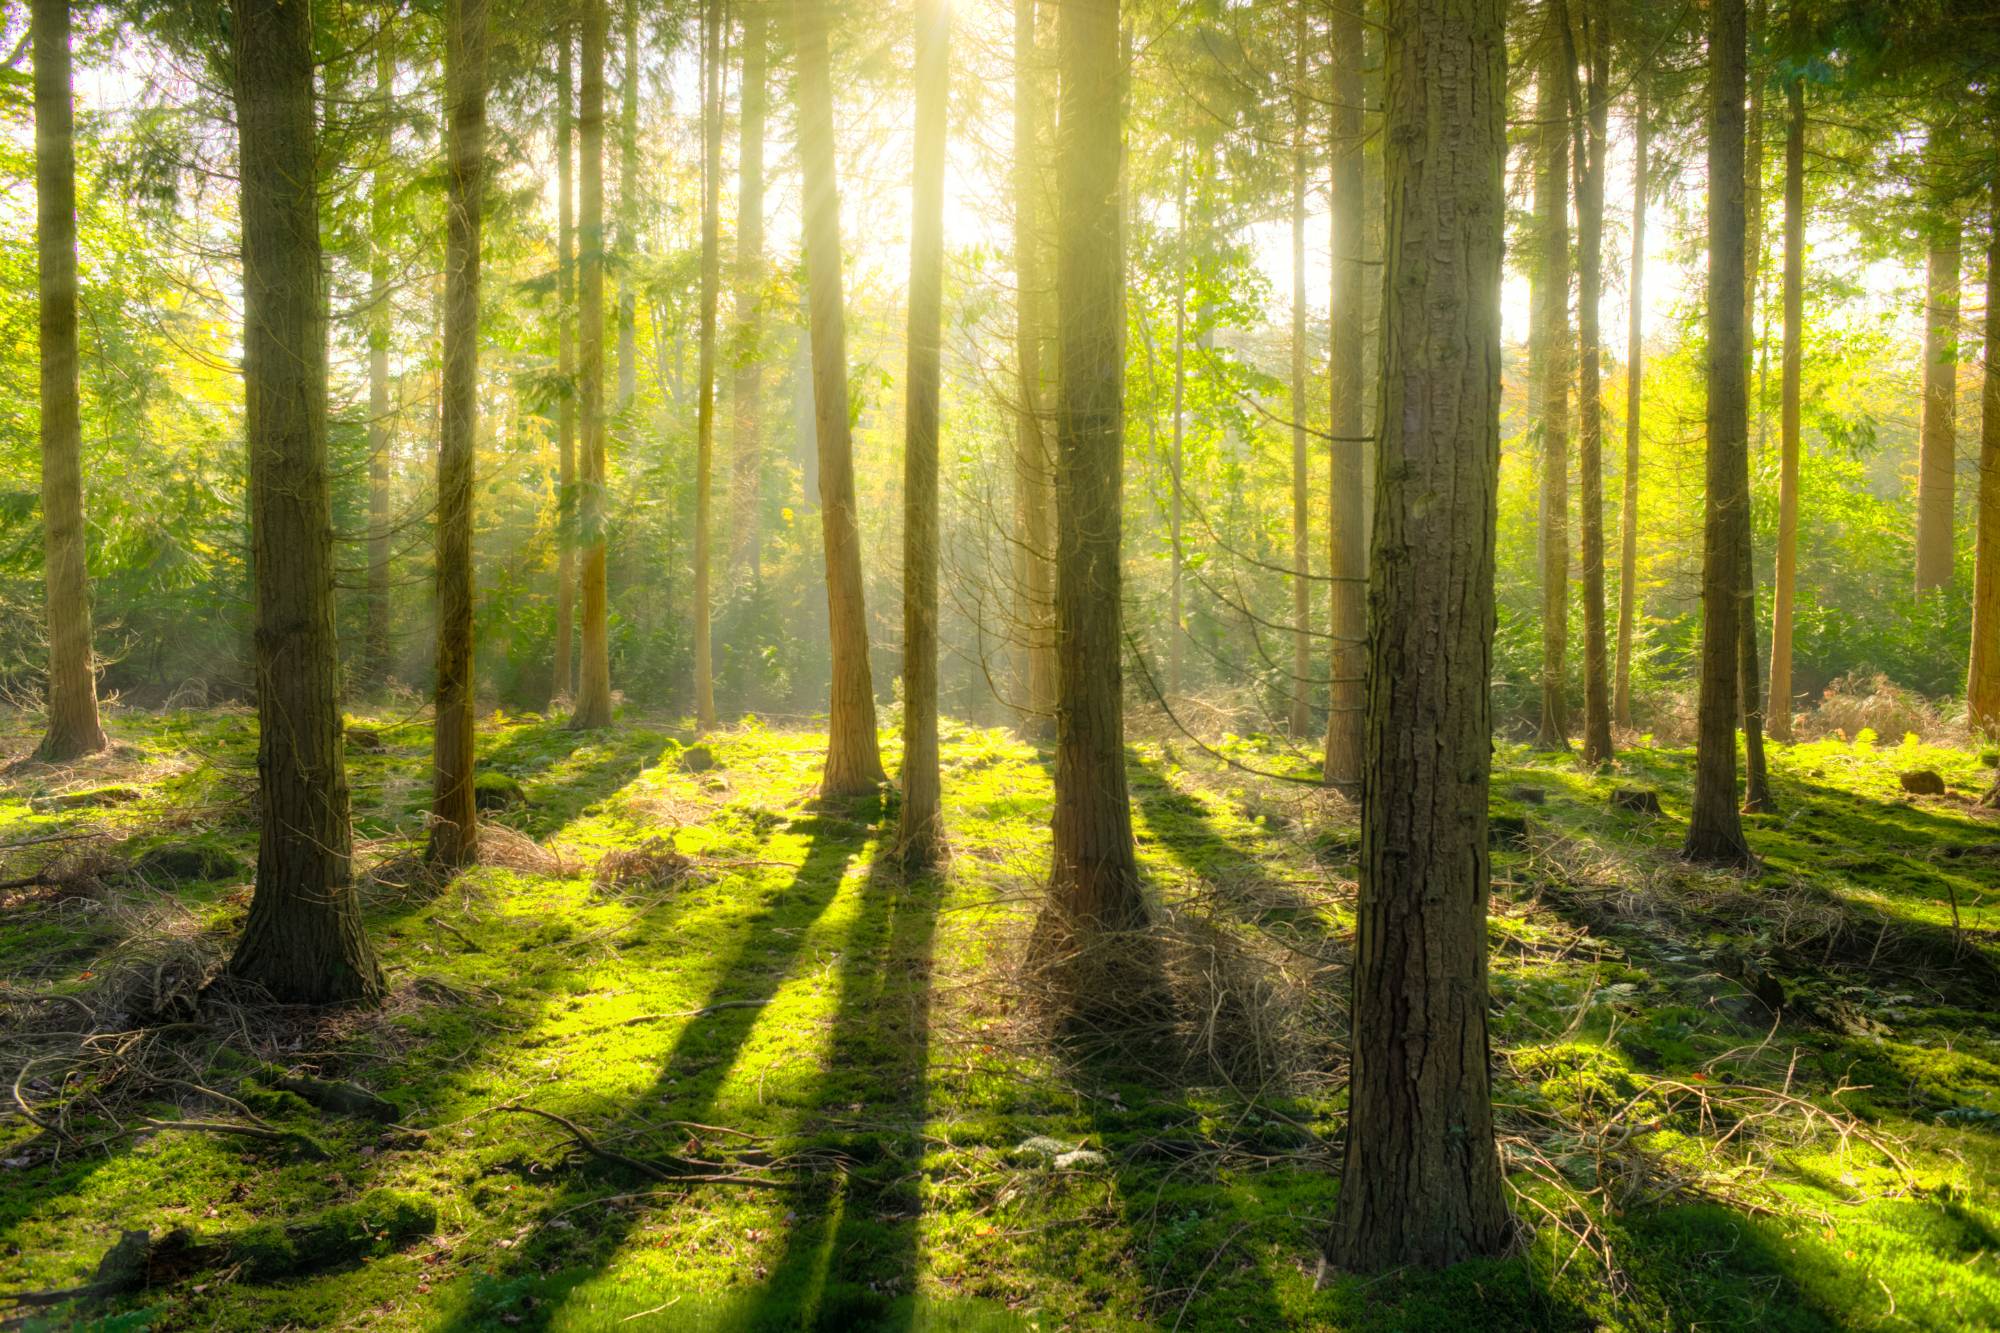 zdjęcie podglądowe tematu artykułu jakim jest shinrin-yoku - terapia lasem